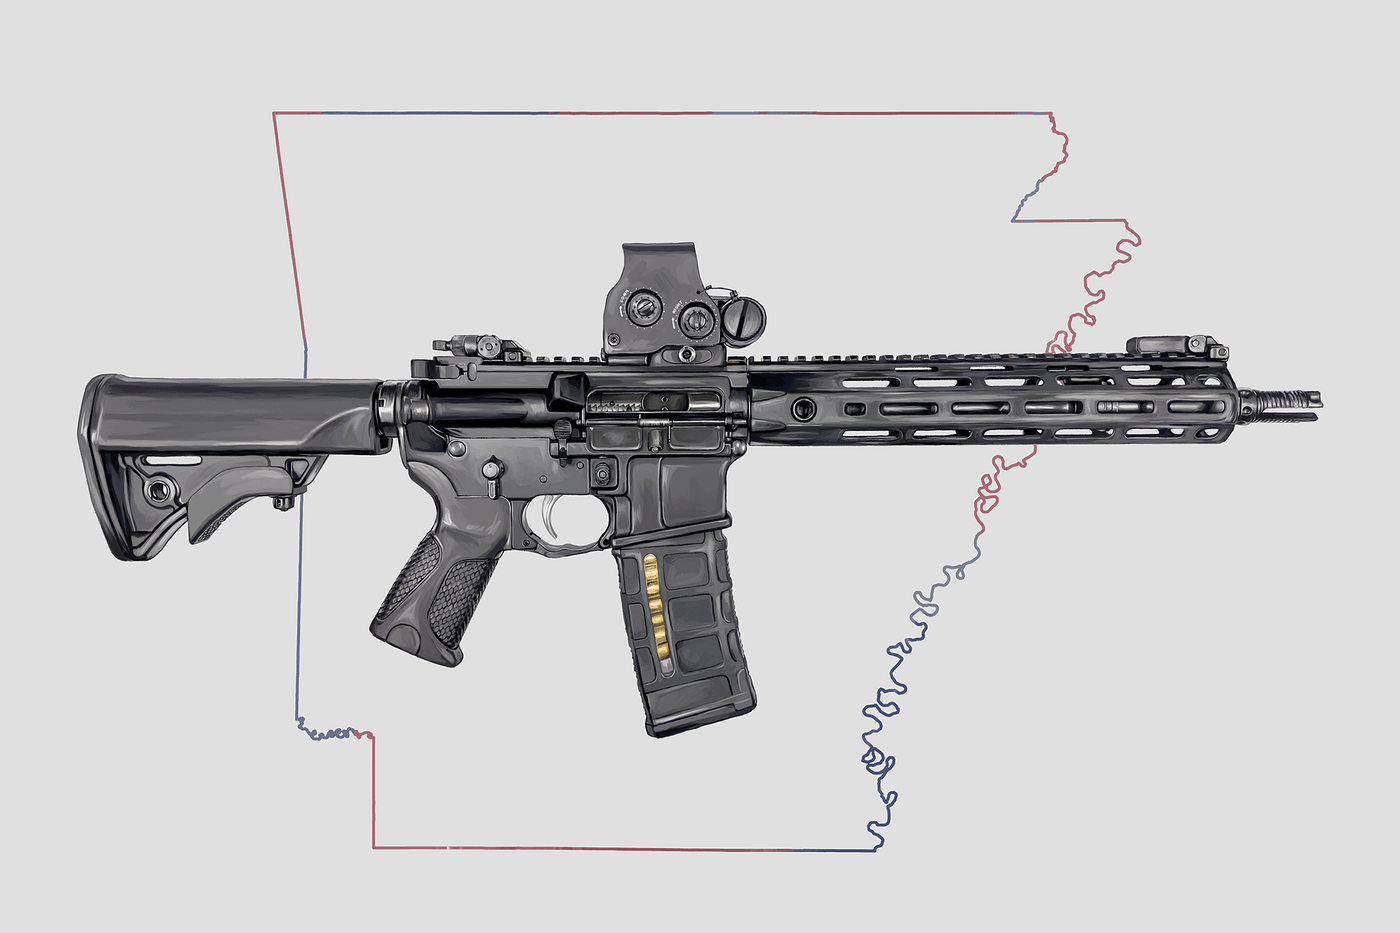 Defending Freedom - Arkansas- AR-15 State Painting (Minimal)